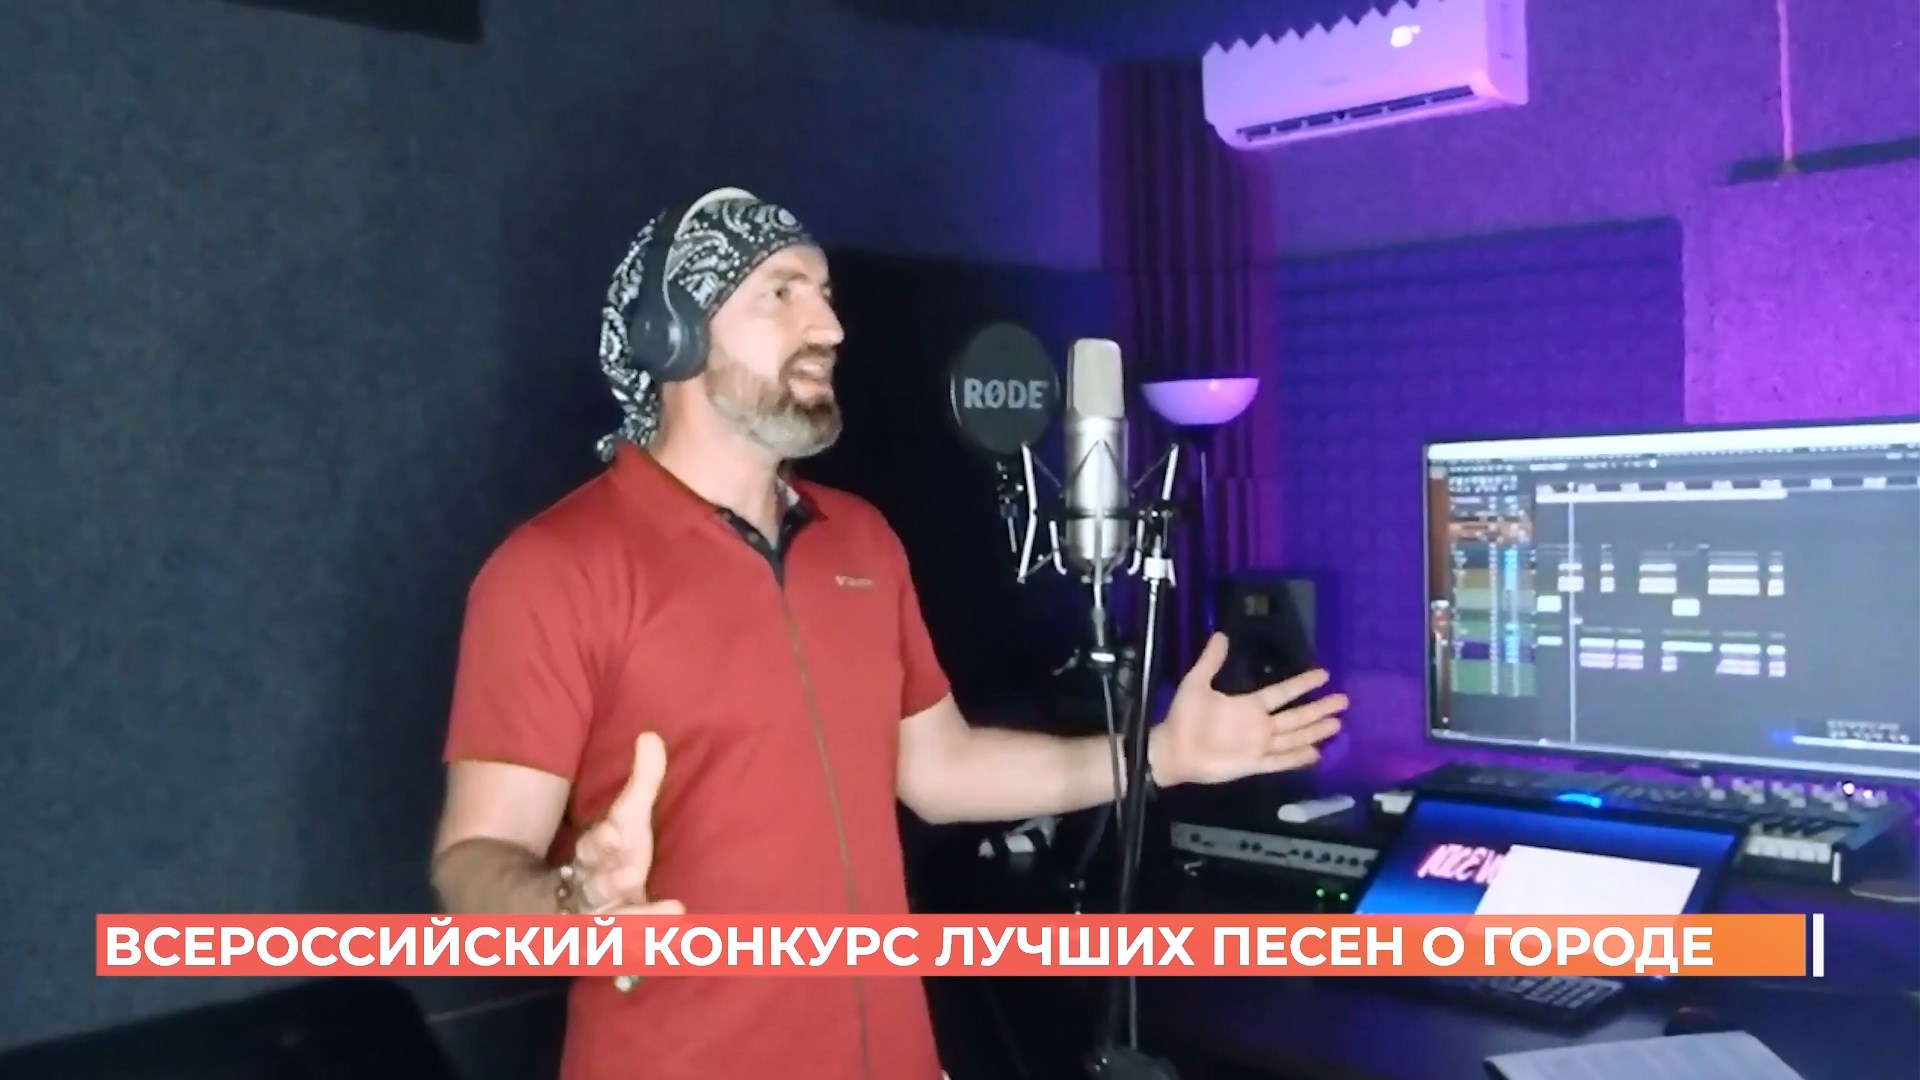 Песня о Ростове заняла второе место во всероссийском конкурсе